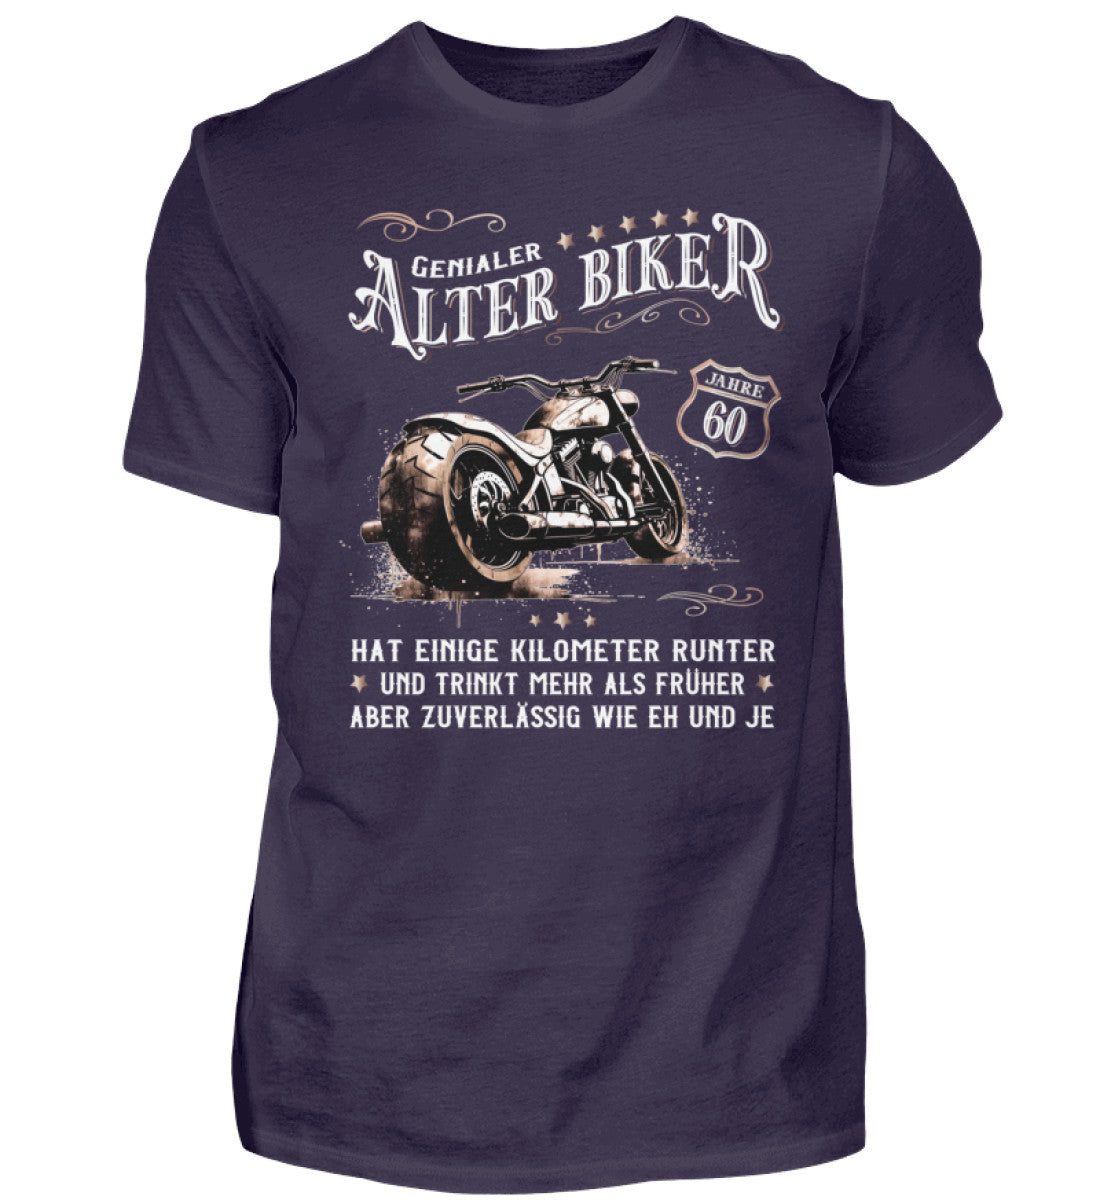 Ein Biker T-Shirt zum Geburtstag für Motorradfahrer von Wingbikers mit dem Aufdruck, Alter Biker - 60 Jahre - Einige Kilometer runter, trinkt mehr - aber zuverlässig wie eh und je - in aubergine lila.